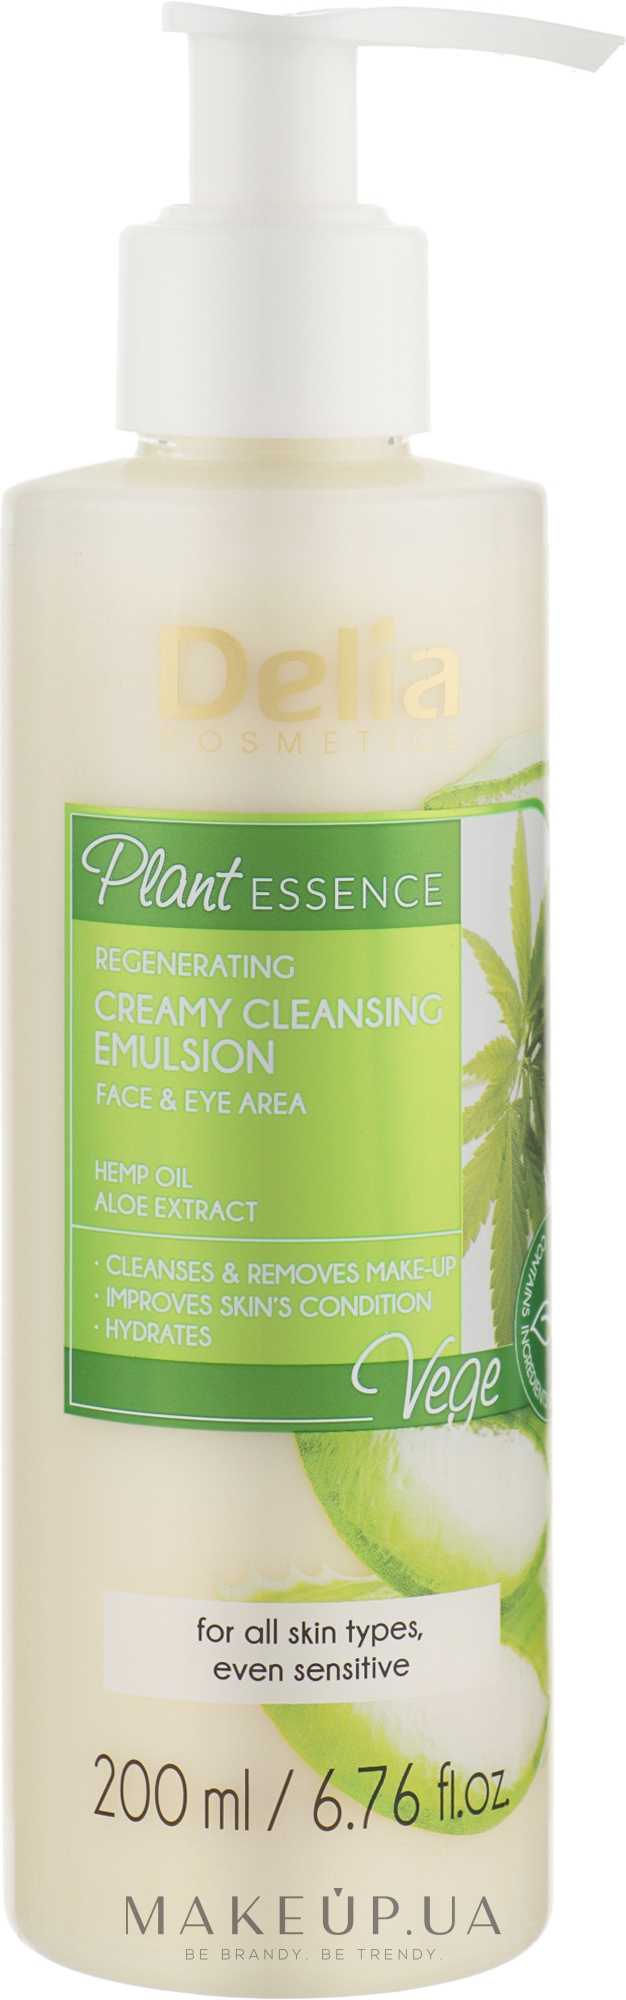 Емульсія для обличчя - Delia Plant Essence Creamy Cleansing Emulsion — фото 200ml